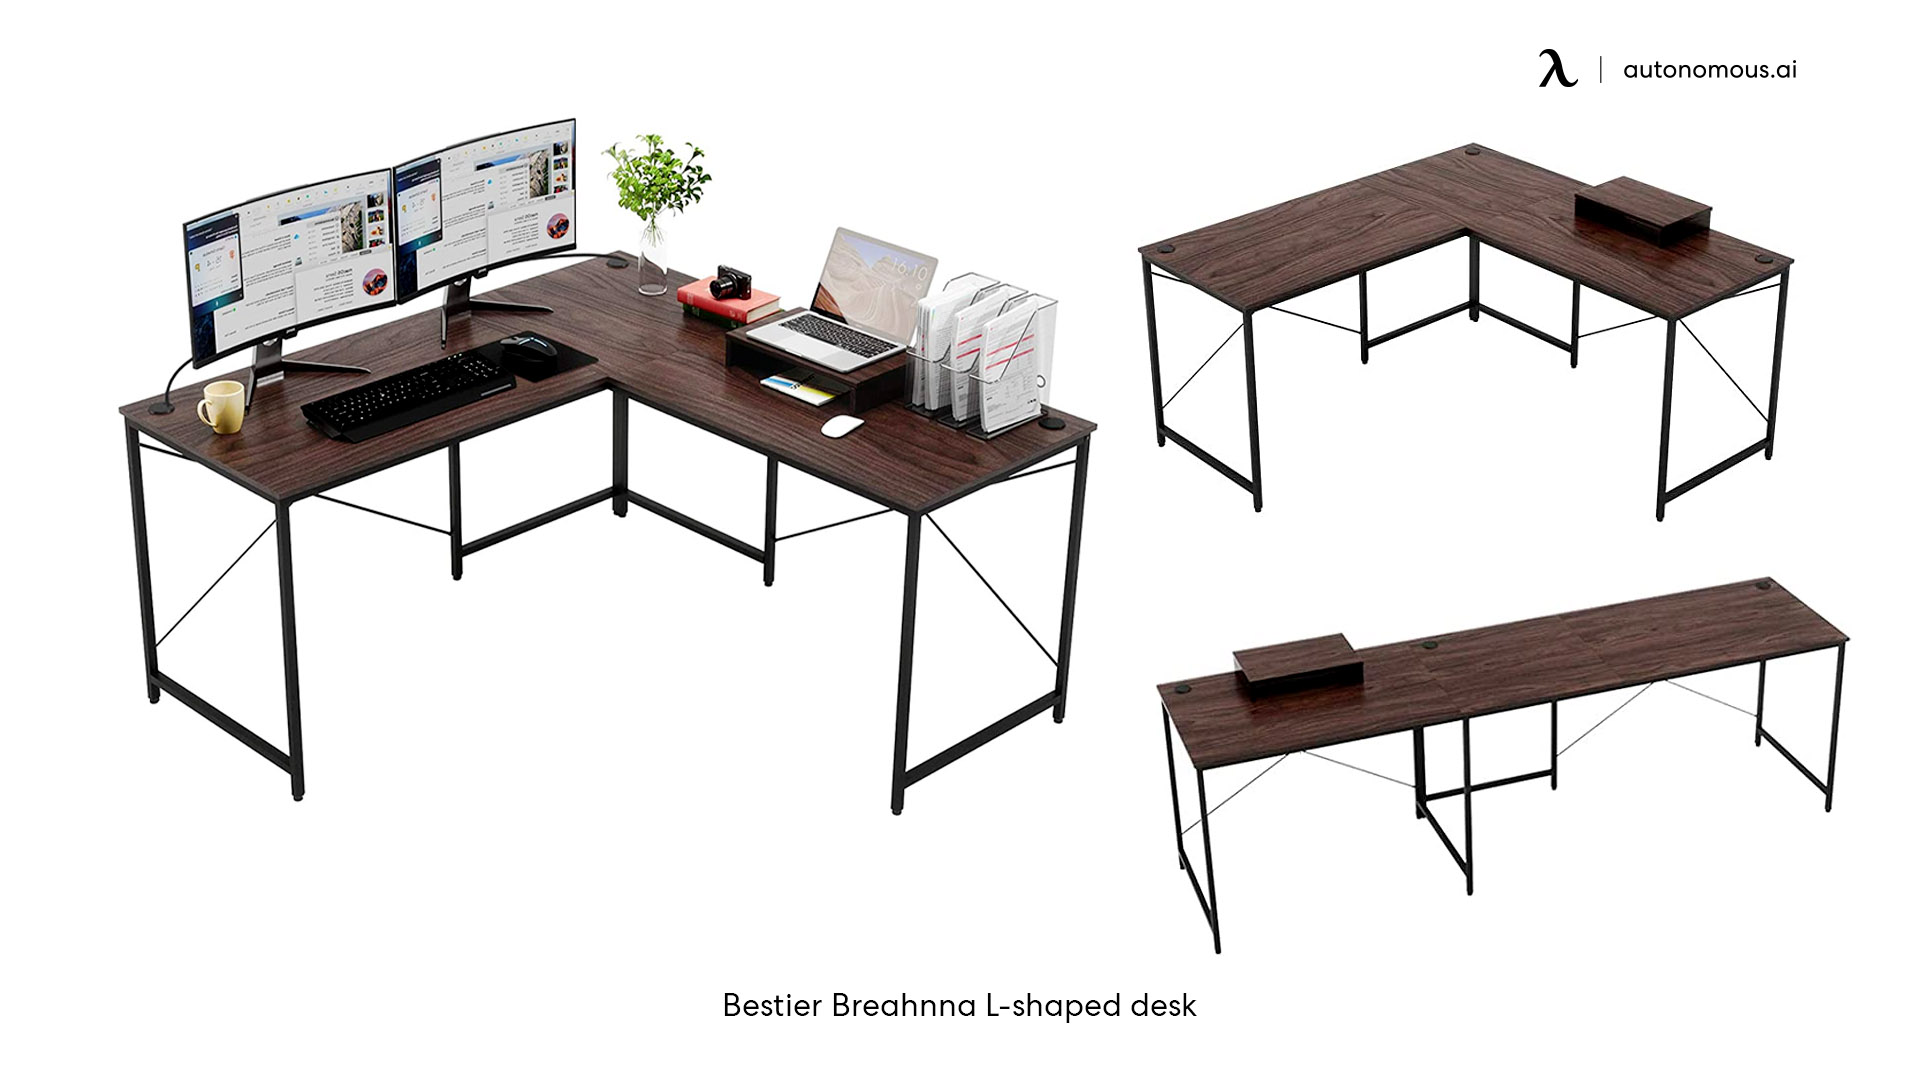 Bestier Breahnna L-shaped desk